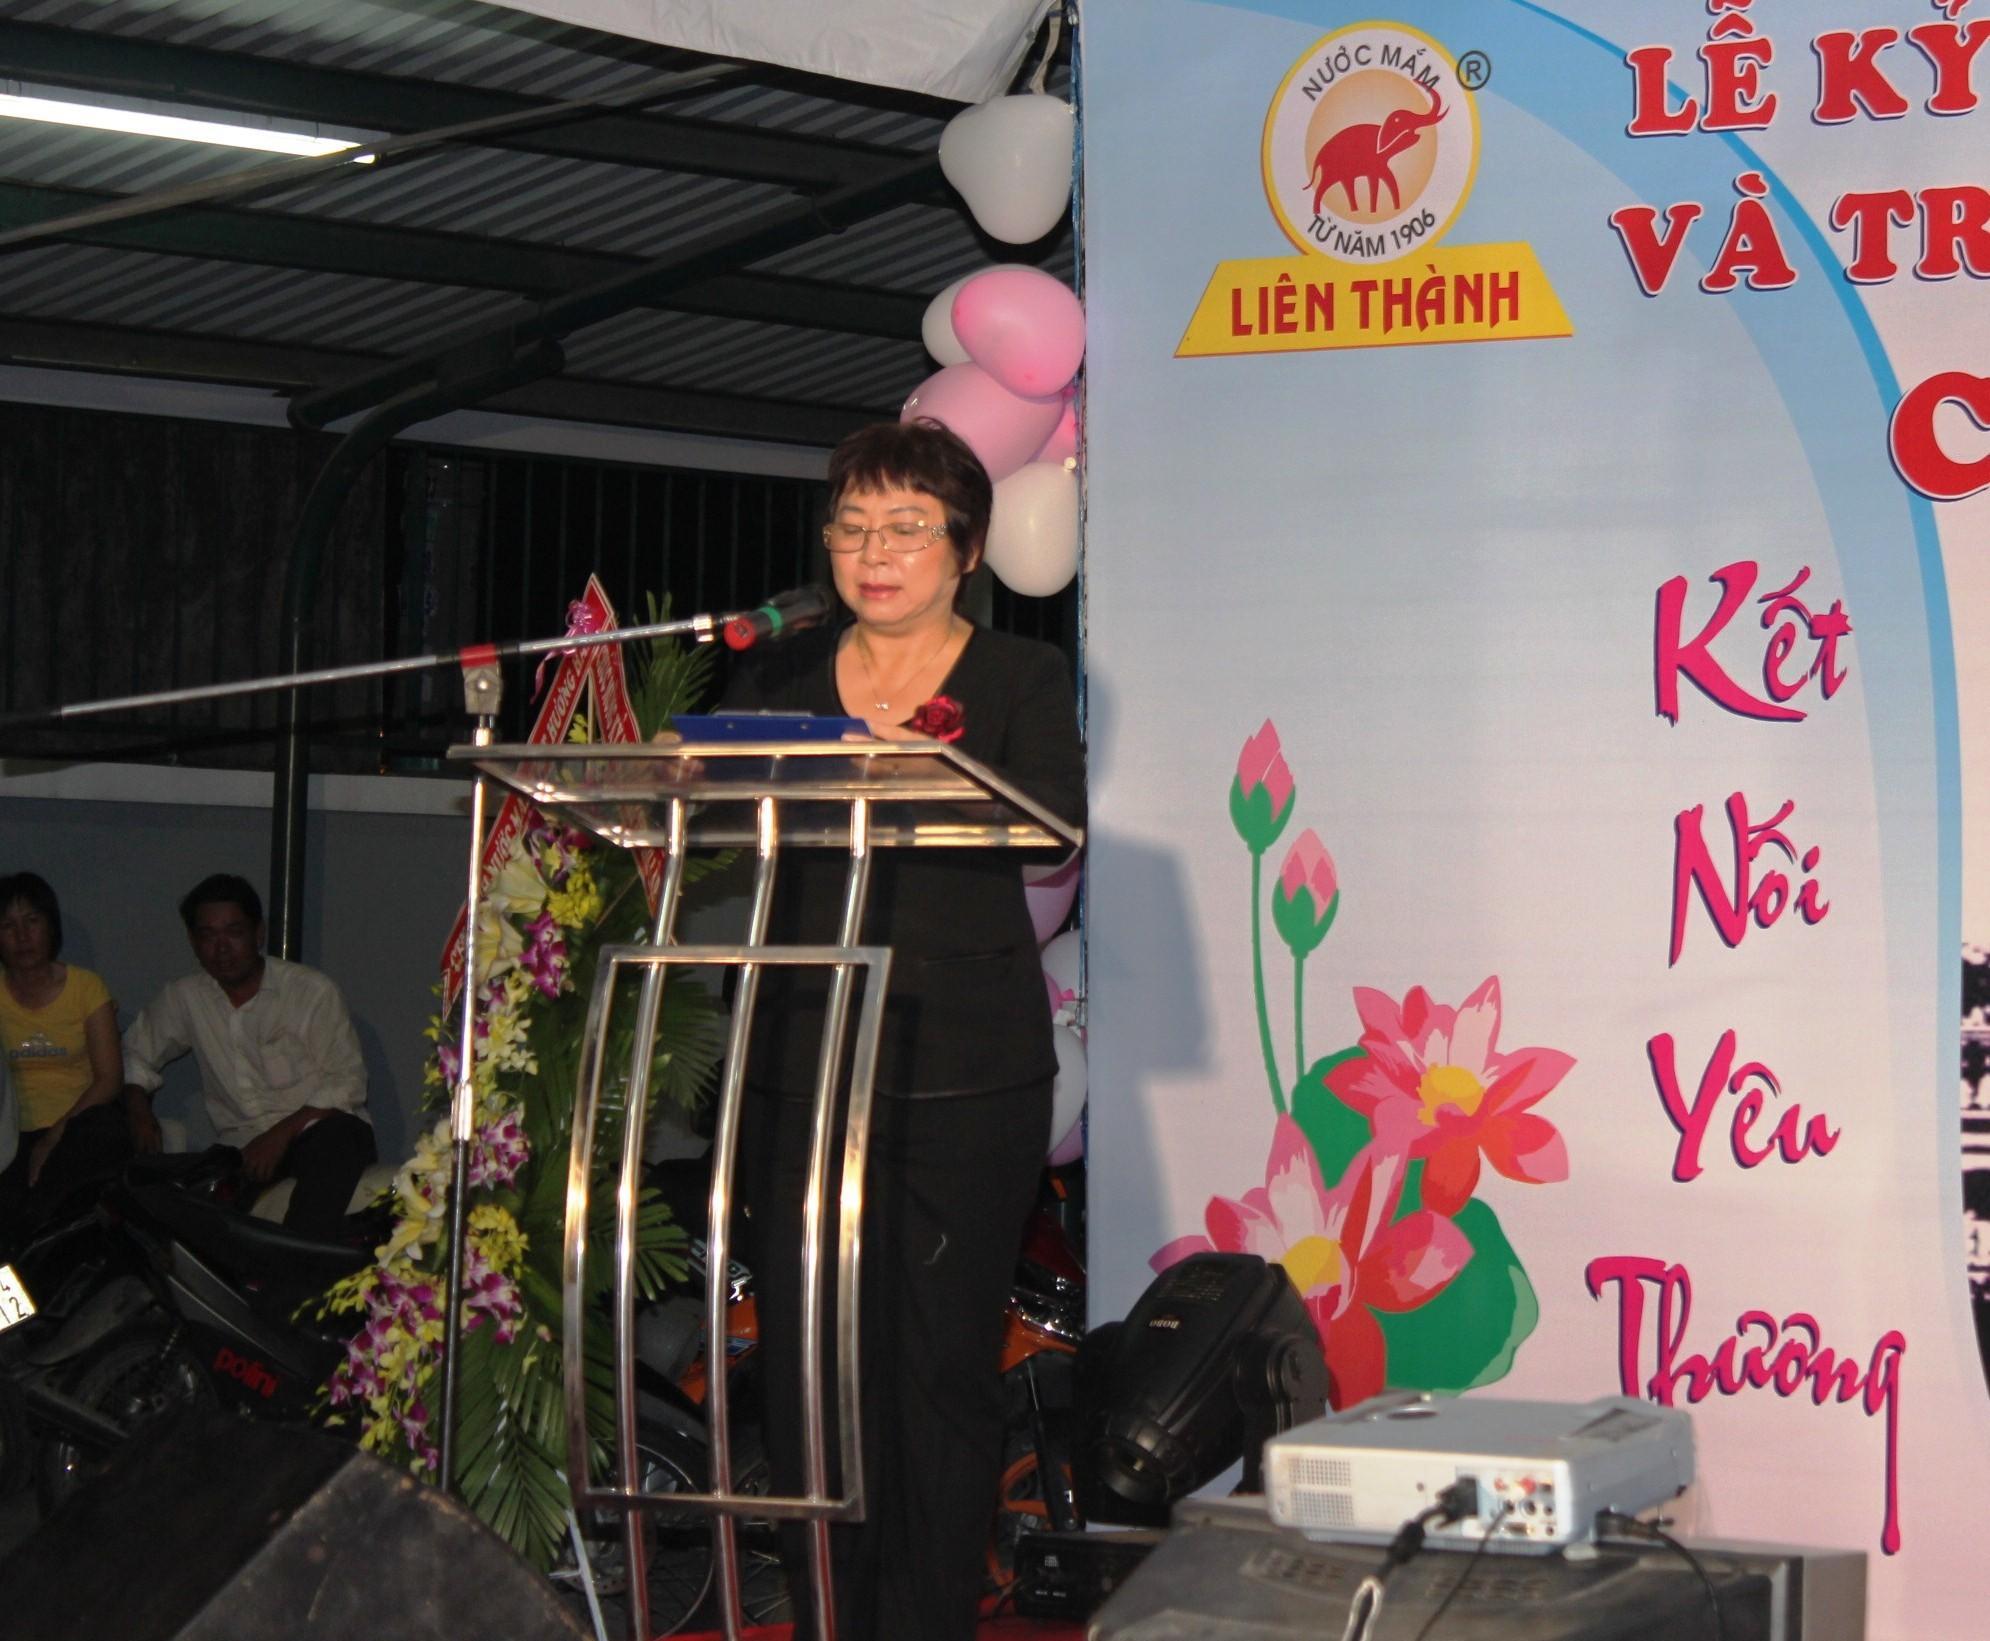 Cũng nhân dịp này, thay mặt Công ty Liên Thành bà Nguyễn Thị Kim Hồng đã trao tặng quà lưu niệm đến đại diện gia đình 3 cụ Hồ tá Bang, Trần Lệ Chất và Nguyễn Hiệt Chi